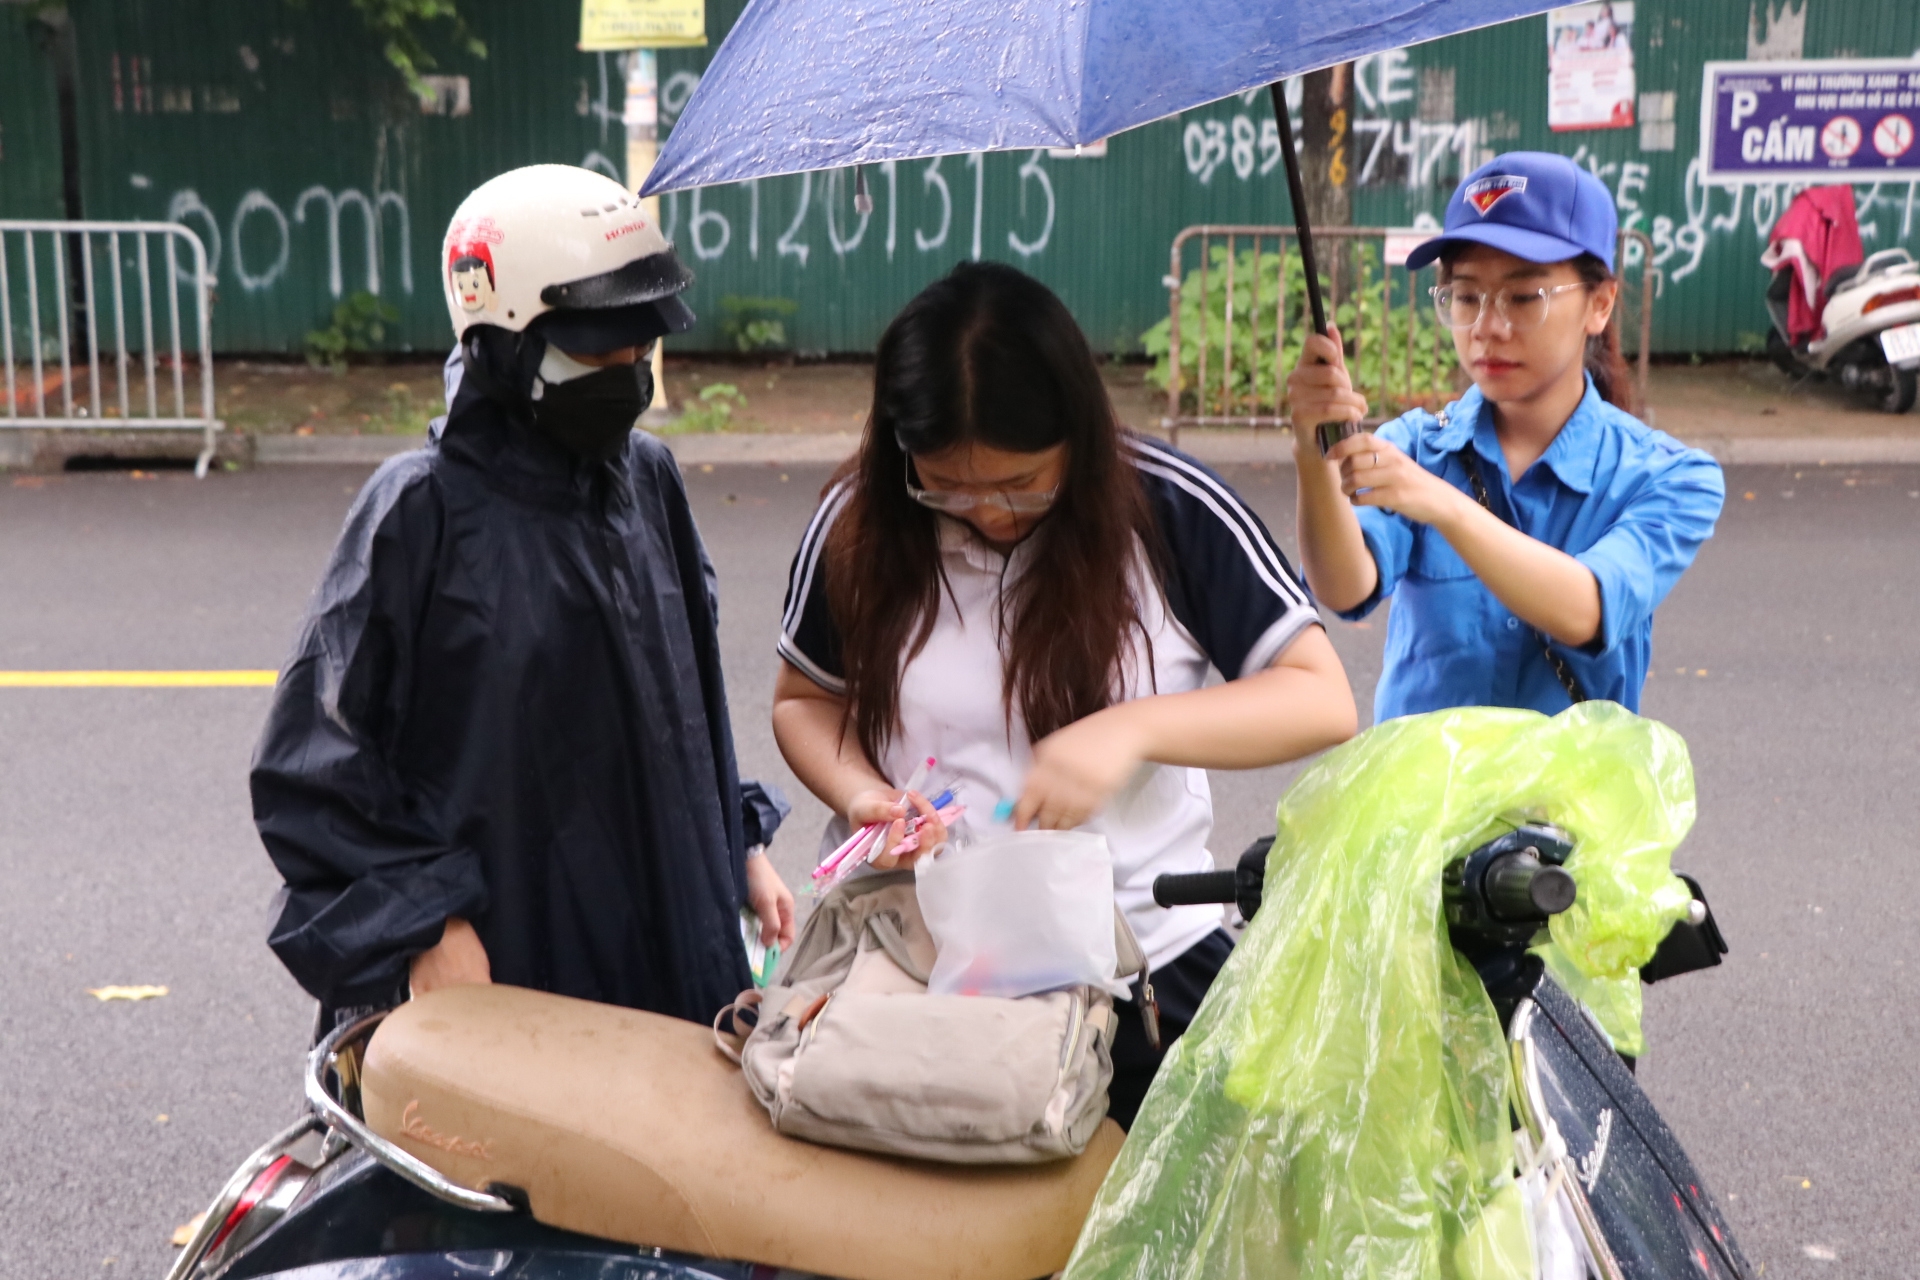 Hơn 105.000 sĩ tử Hà Nội "đội mưa" trong môn thi cuối cùng